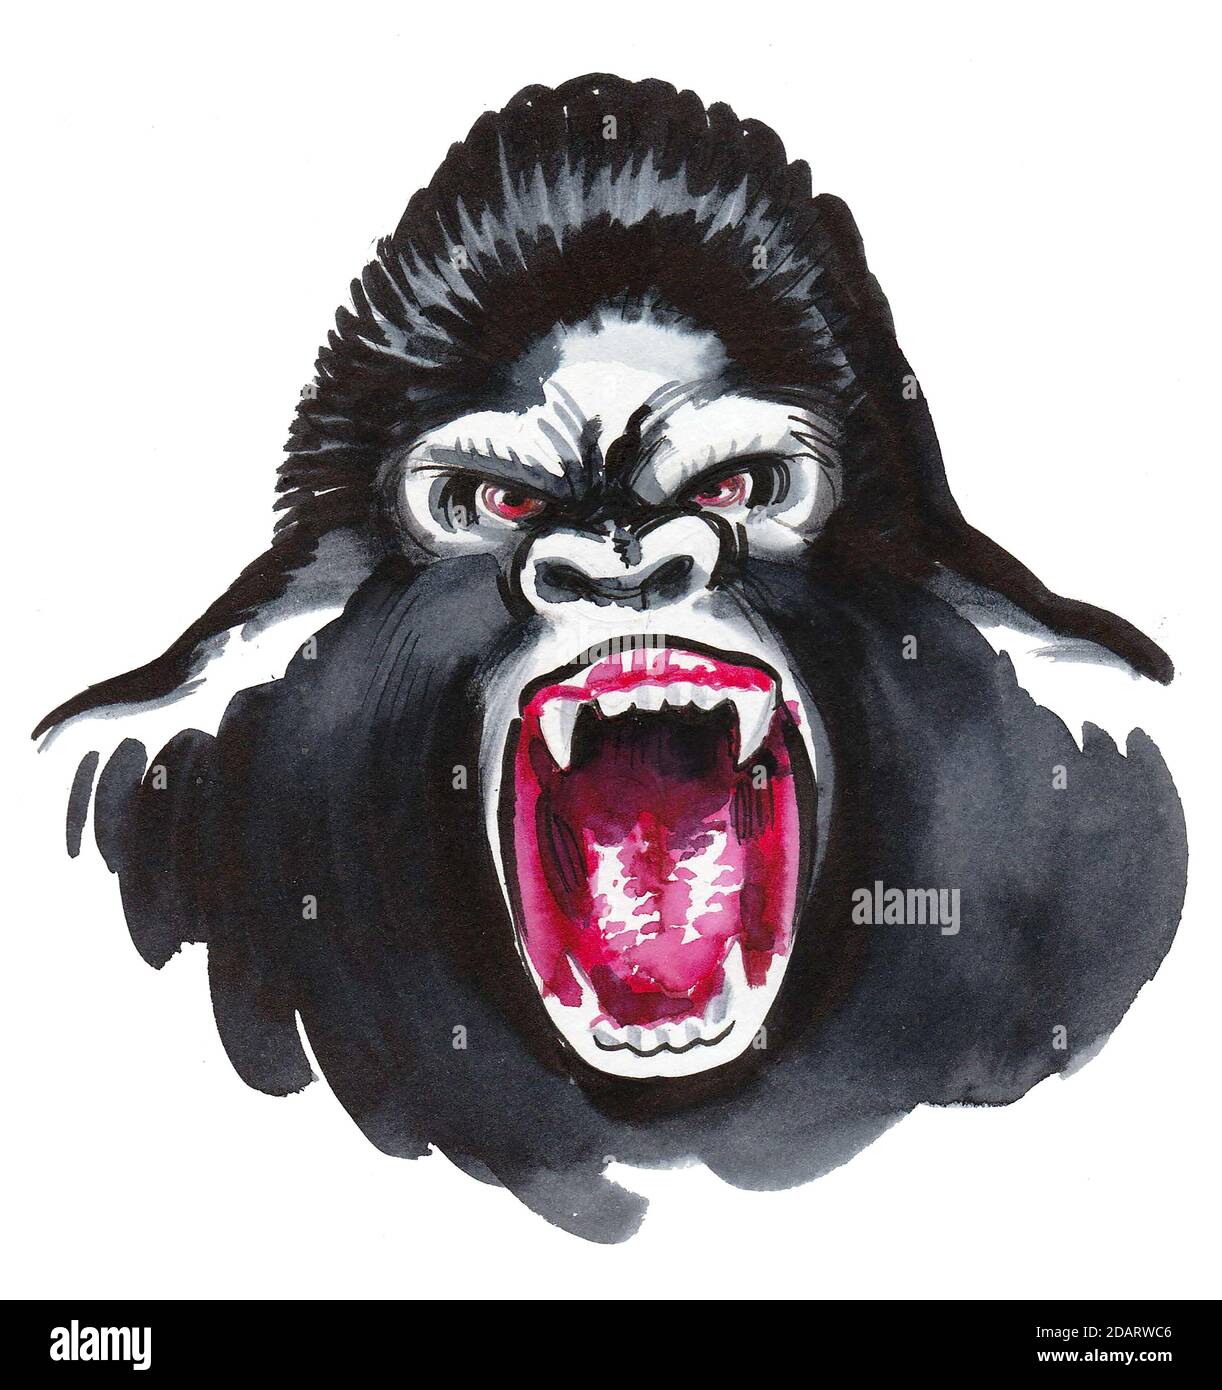 Visage de gorille enragé. Dessin à l'encre et aquarelle Banque D'Images